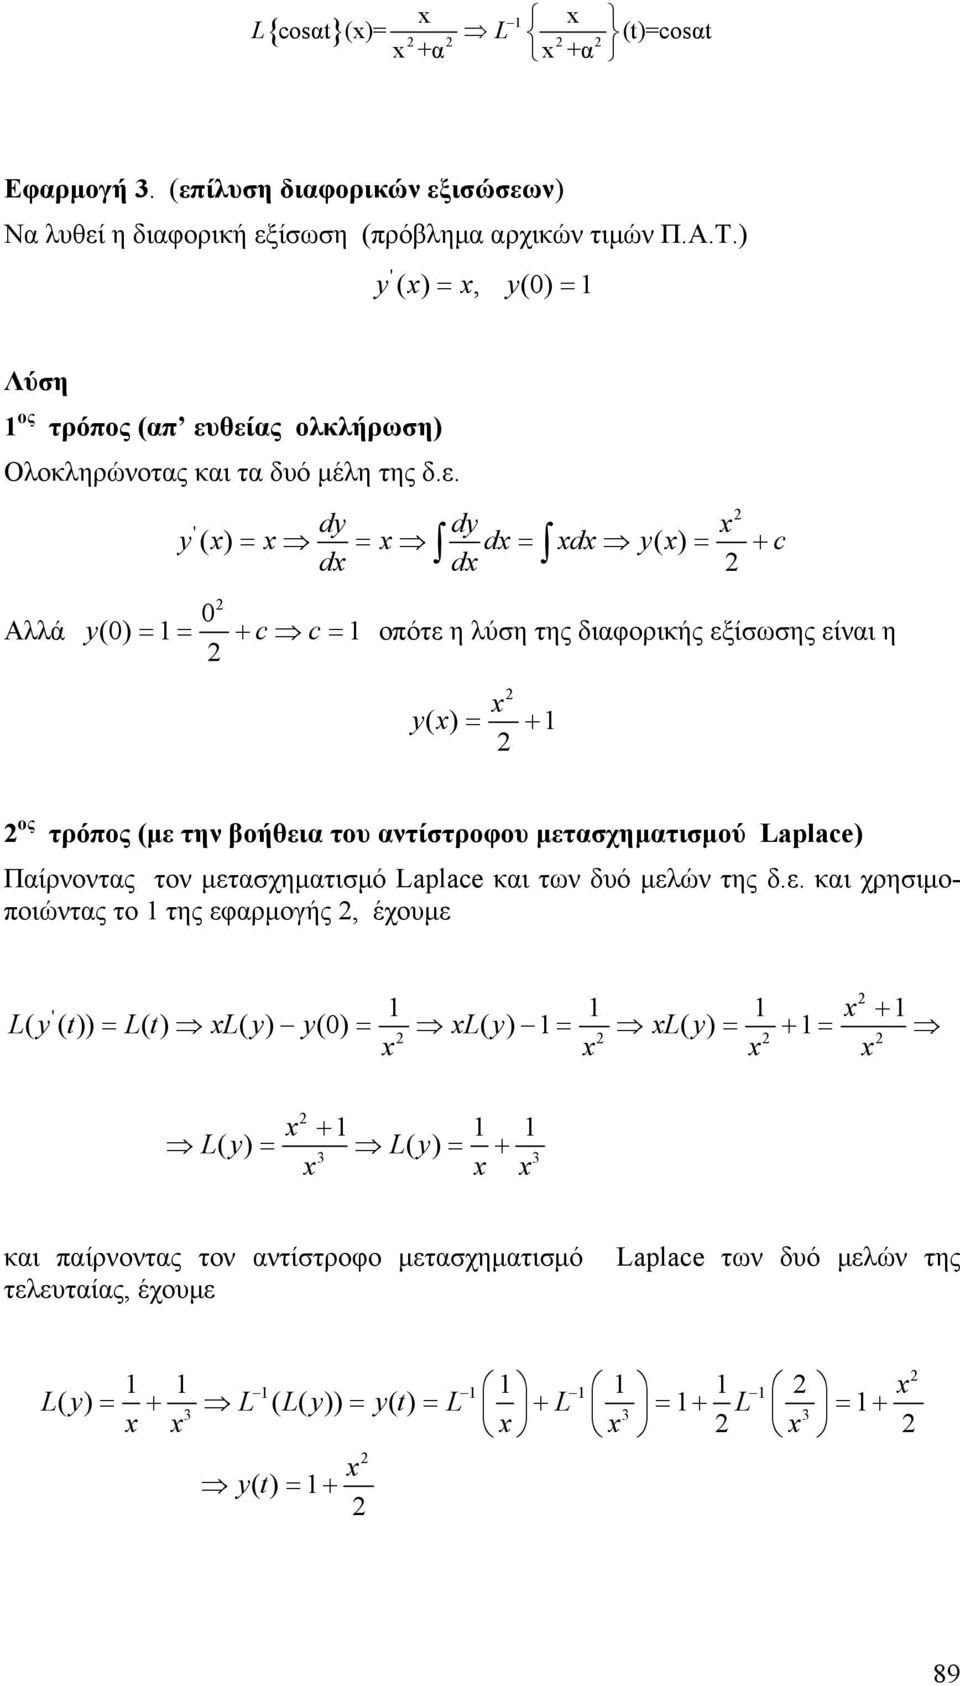 θείς ολκλήρωση) Ολοκληρώνοτς κι τ δυό μέλη της δ.ε. dy dy y ' ( ) = d d y( ) d = d = = c Αλλά y() = = c c = οπότε η λύση της διφορικής εξίσωσης είνι η y ( ) = ος τρόπος